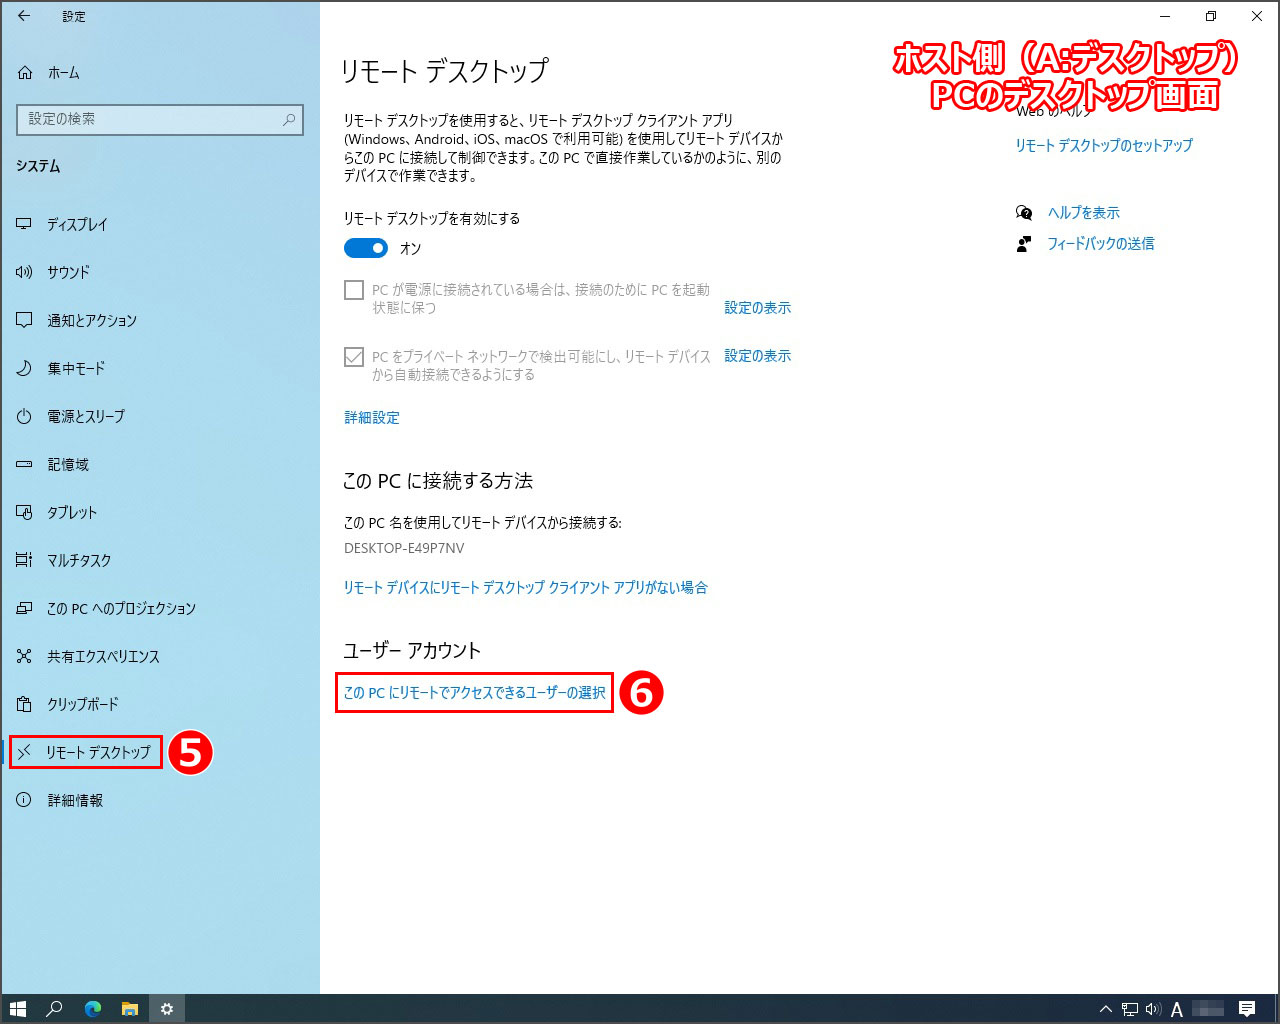 左側メニューの『リモートデスクトップ』を選択後、一番下の『このPCにリモートでアクセスできるユーザーの選択』をクリック。